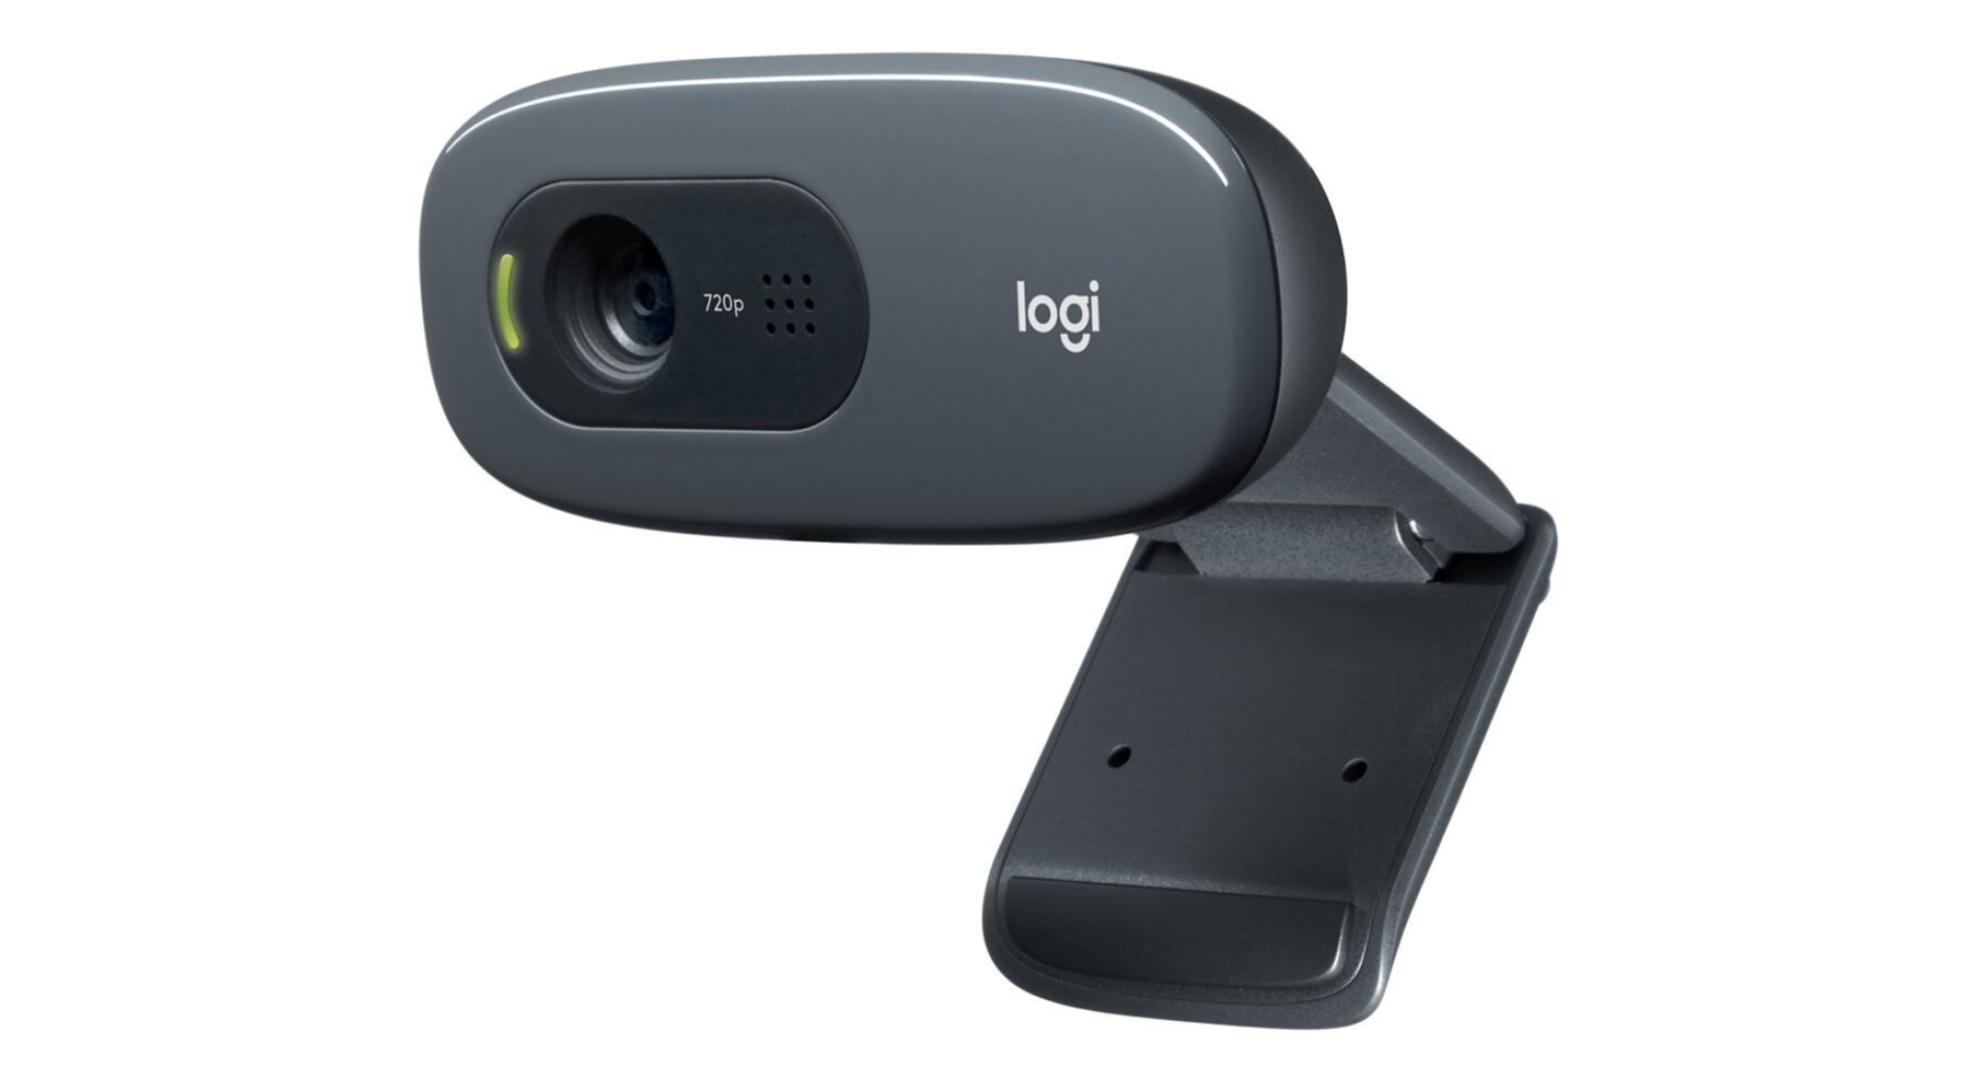 Webcam 1080P Full HD Ordinateur Portable pour PC avec 3 Niveaux D/'éclairage Caméra Streamcam avec Doubles Stéréo Microphone Mise au Point Automatique,Suppression du Bruit,Appel Vidéo,Cours en Ligne